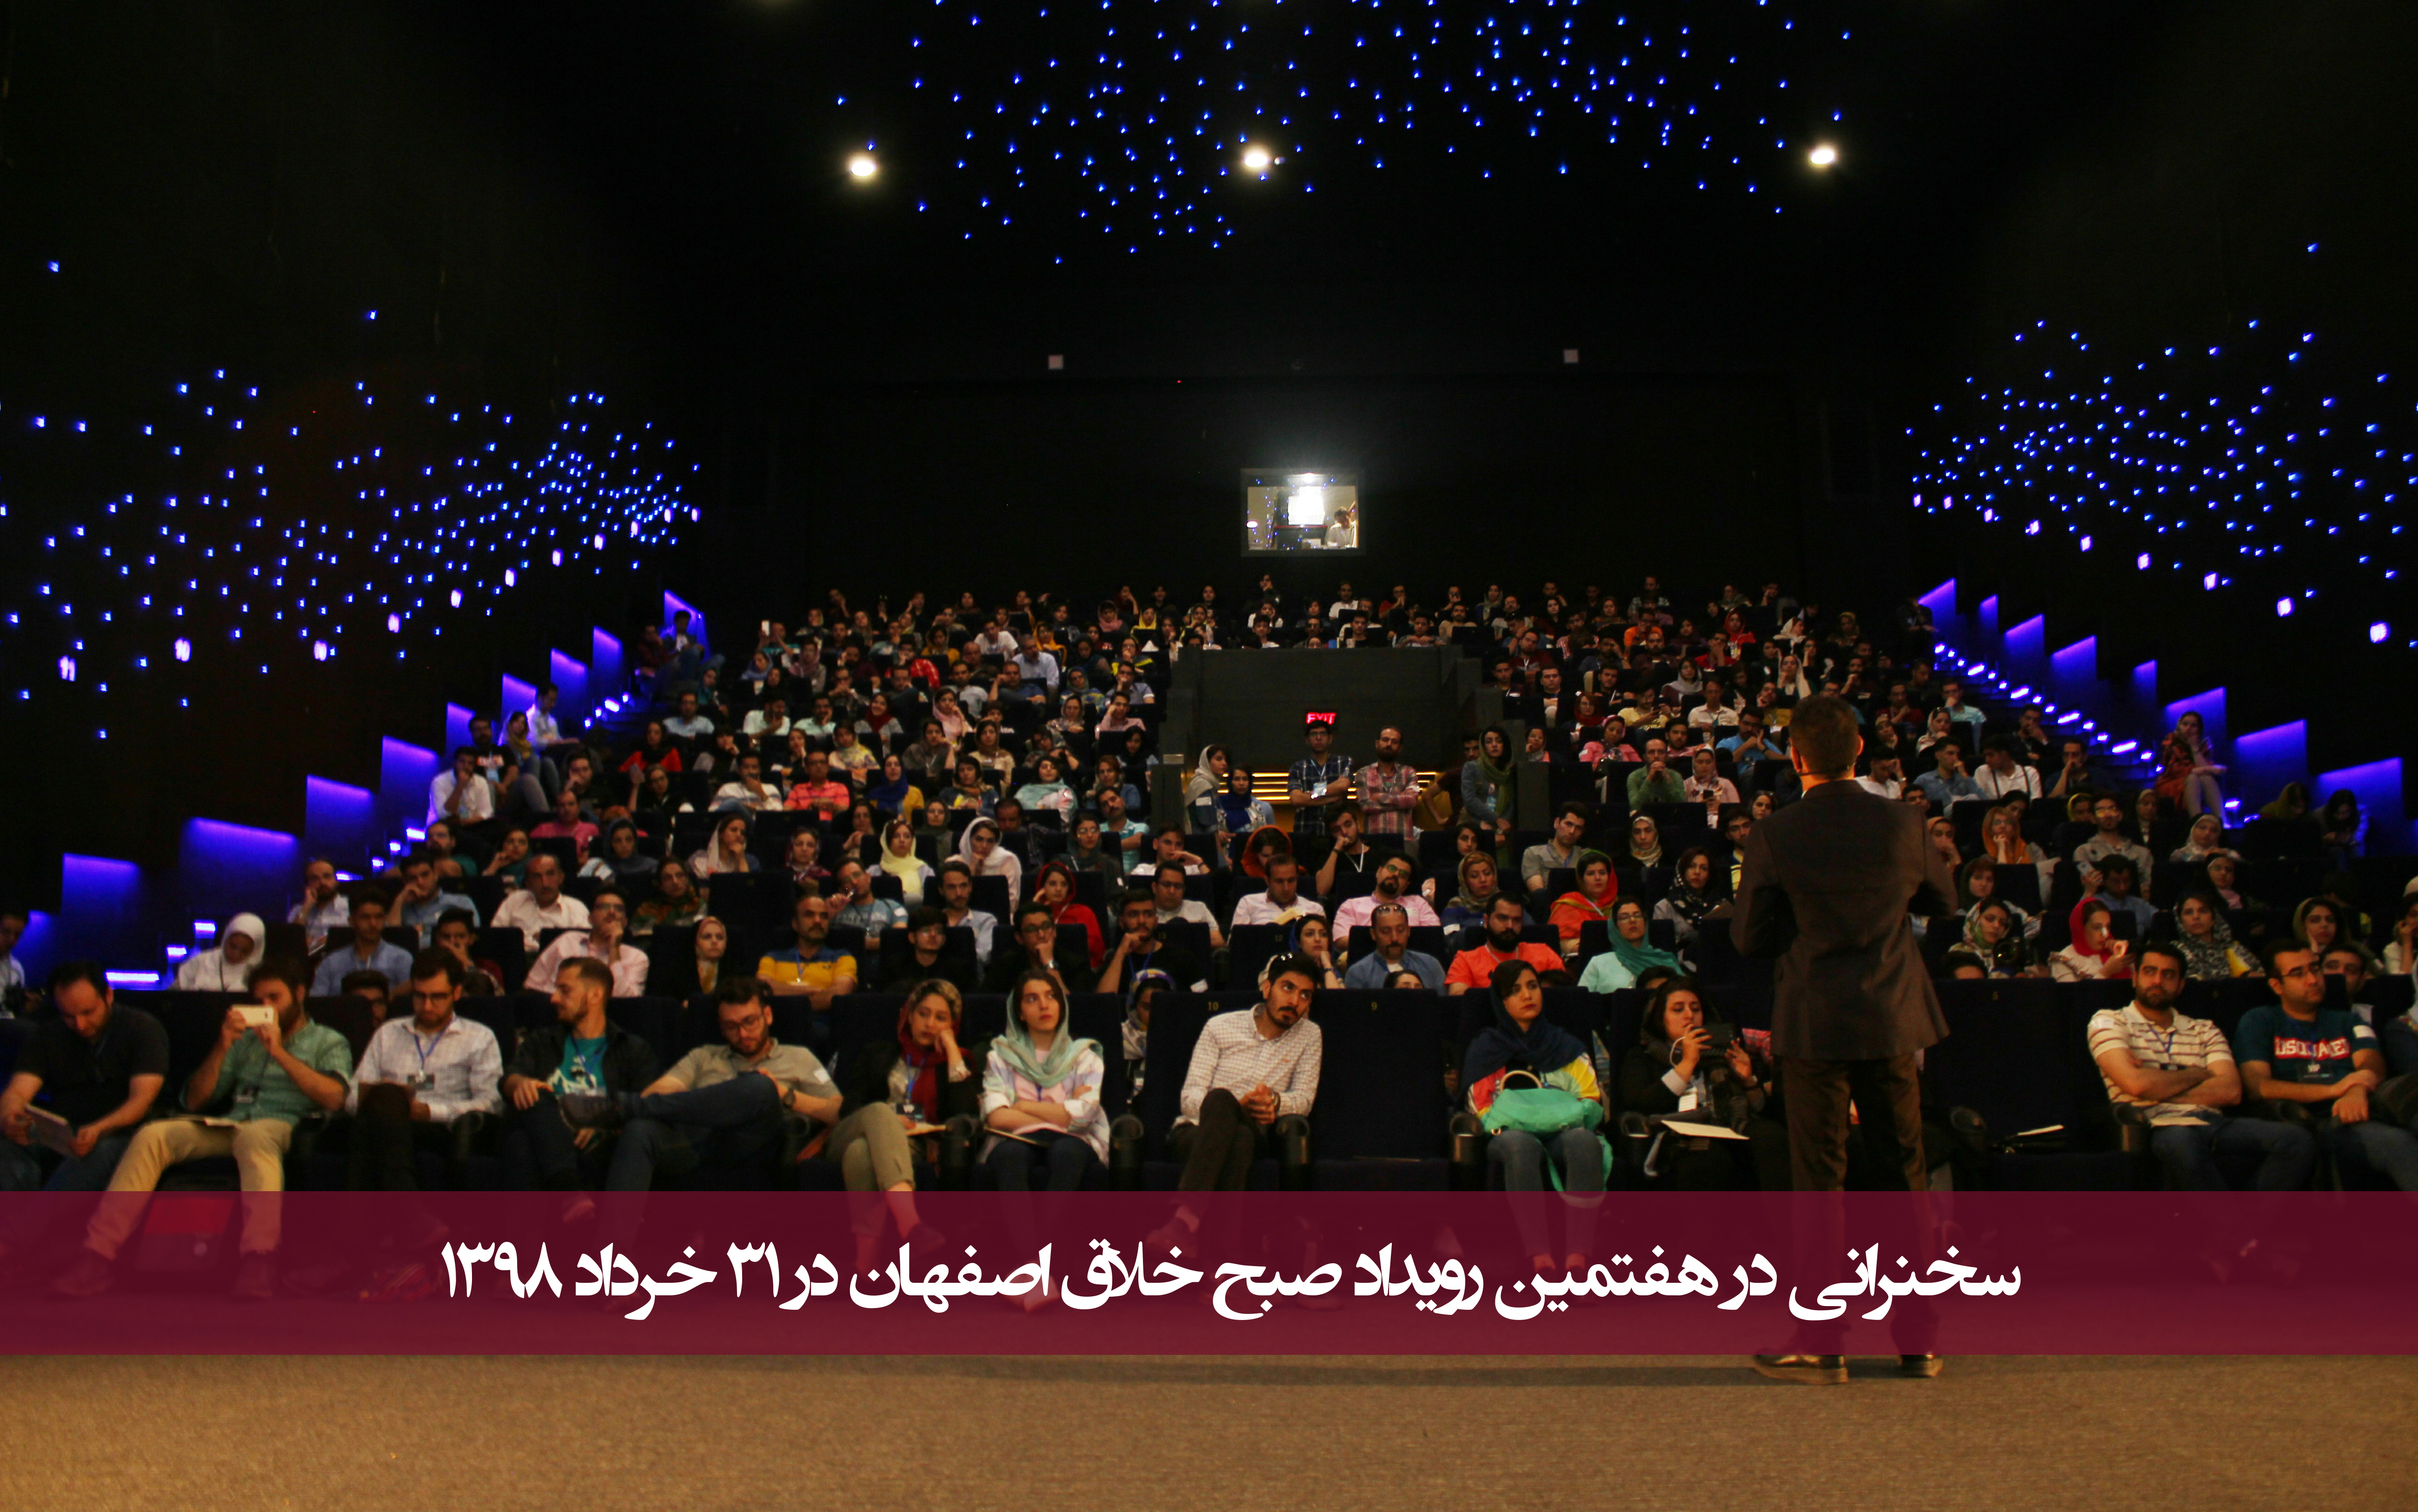 سخنرانی در هفتمین رویداد صبح خلاق اصفهان